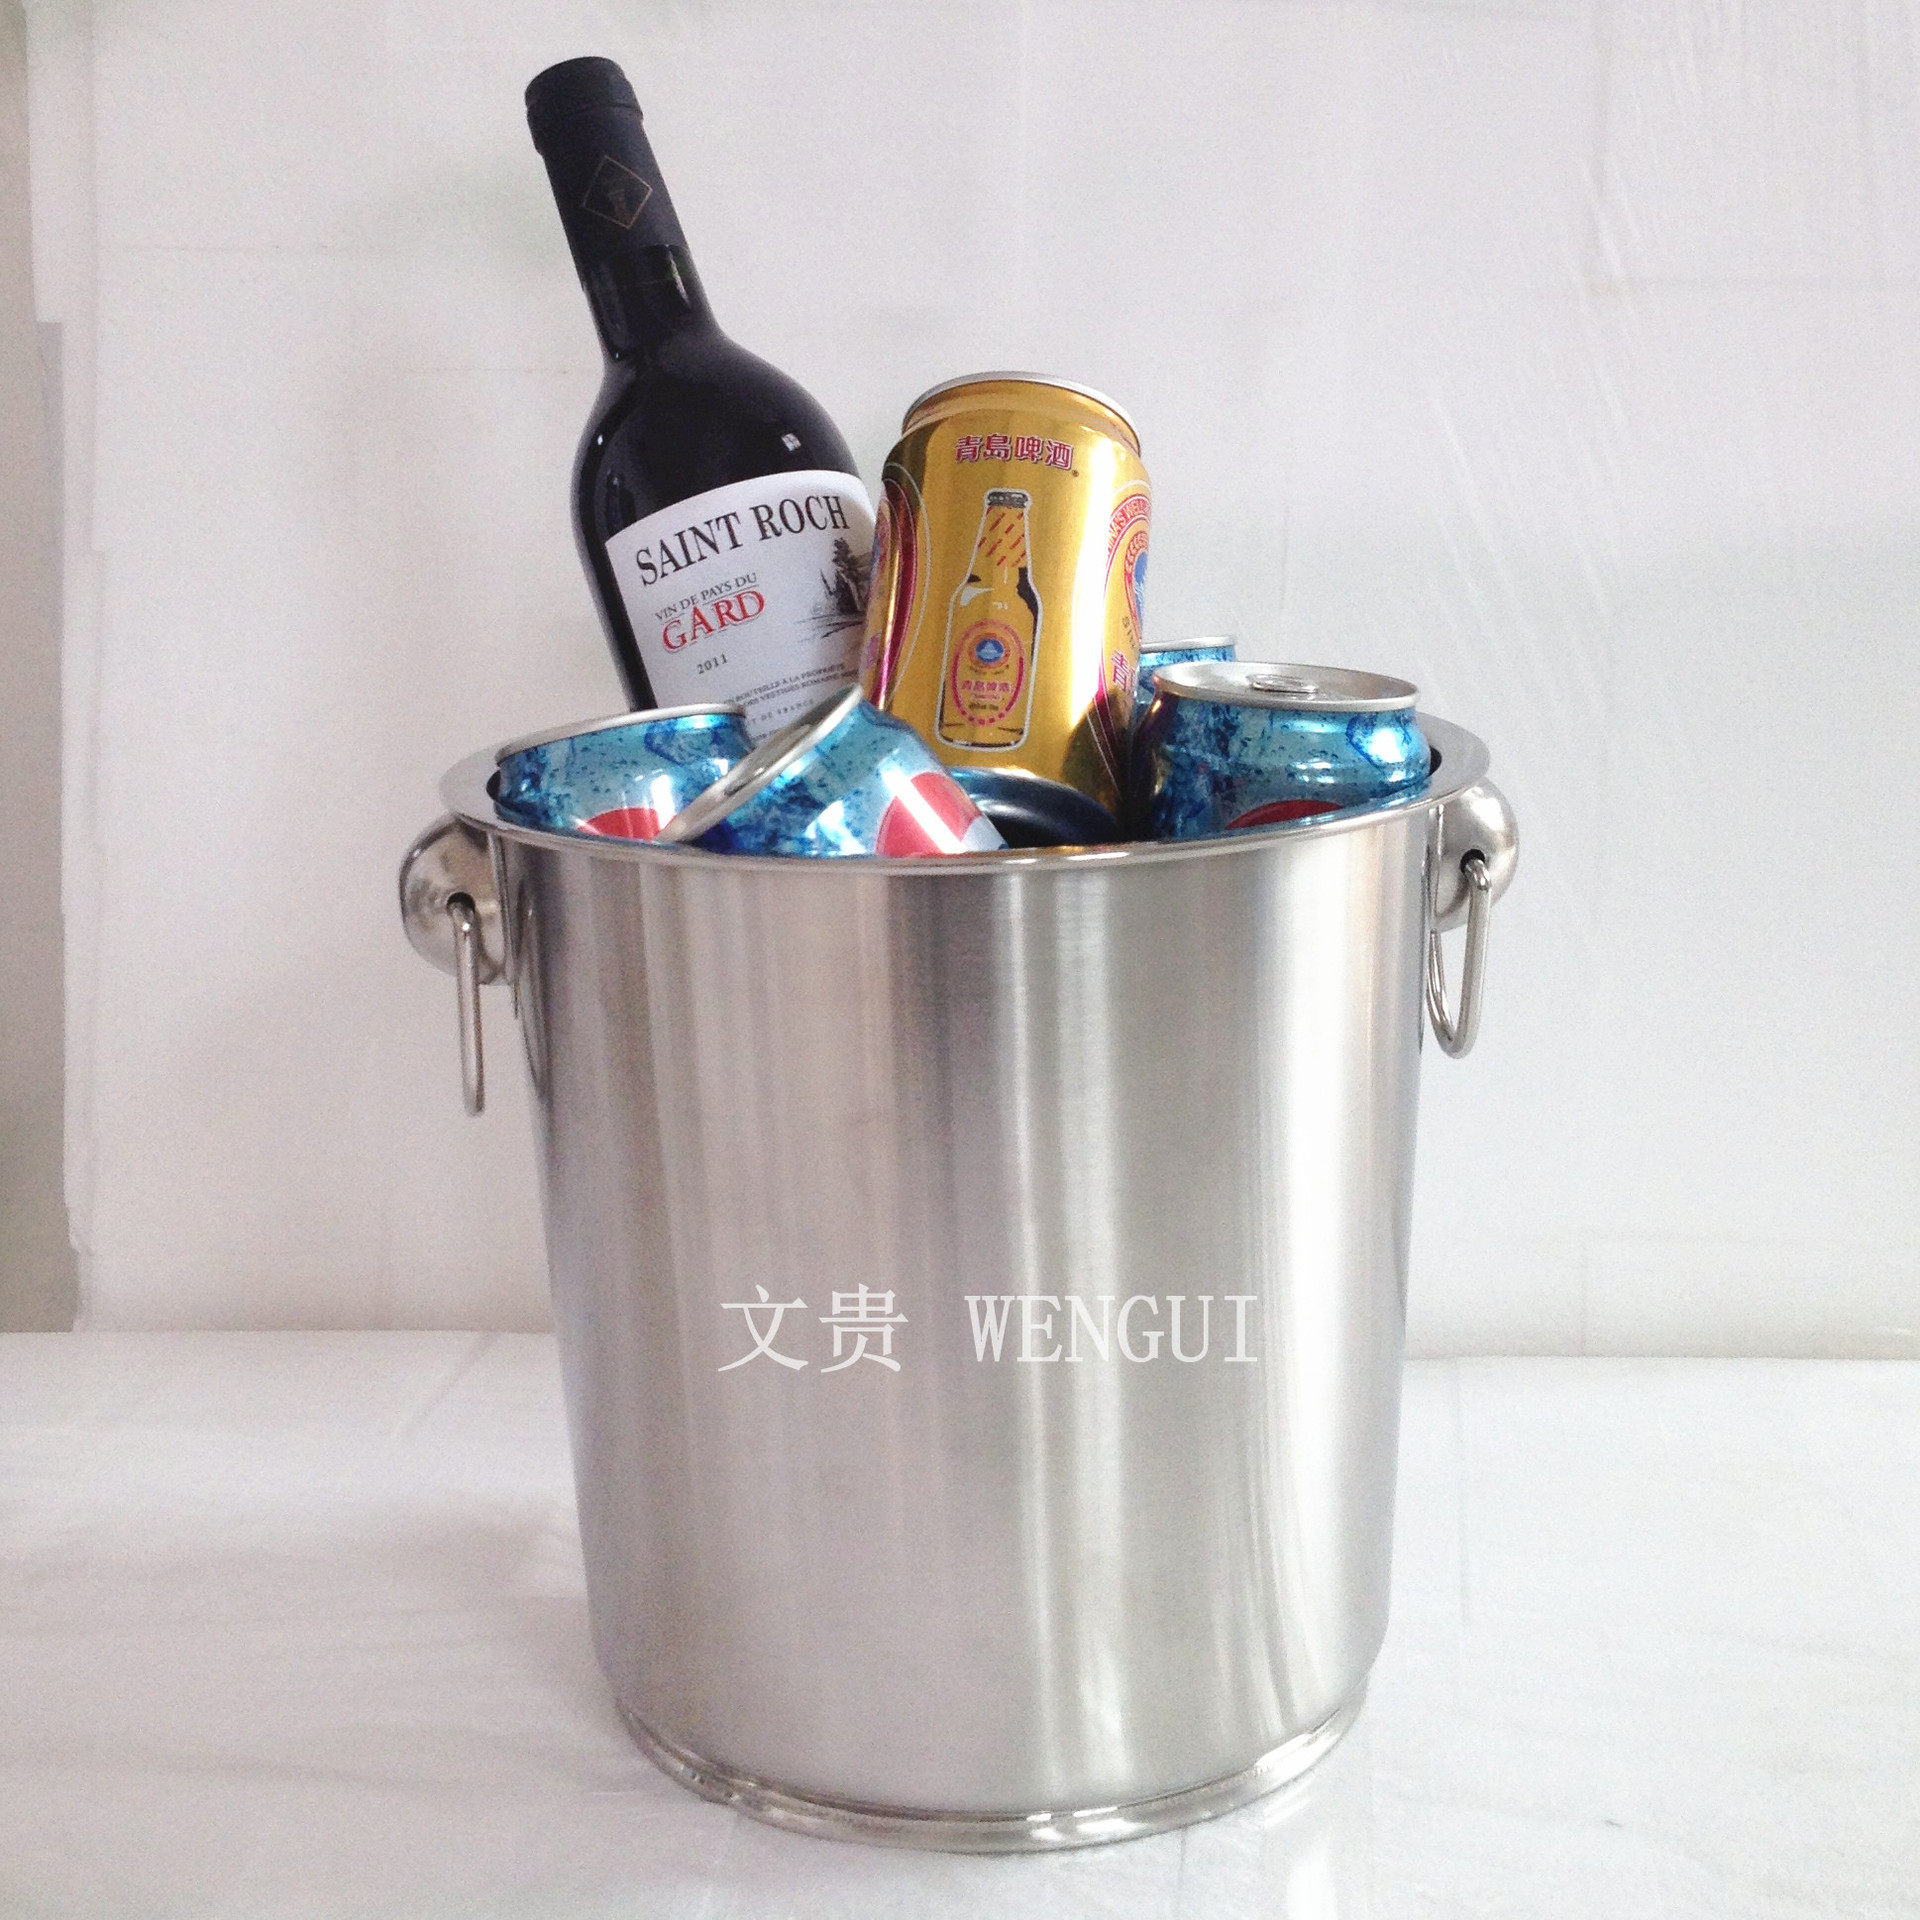 冰桶 大号中号小号香槟桶不锈钢【文贵】_冰桶,冰夹_列表网